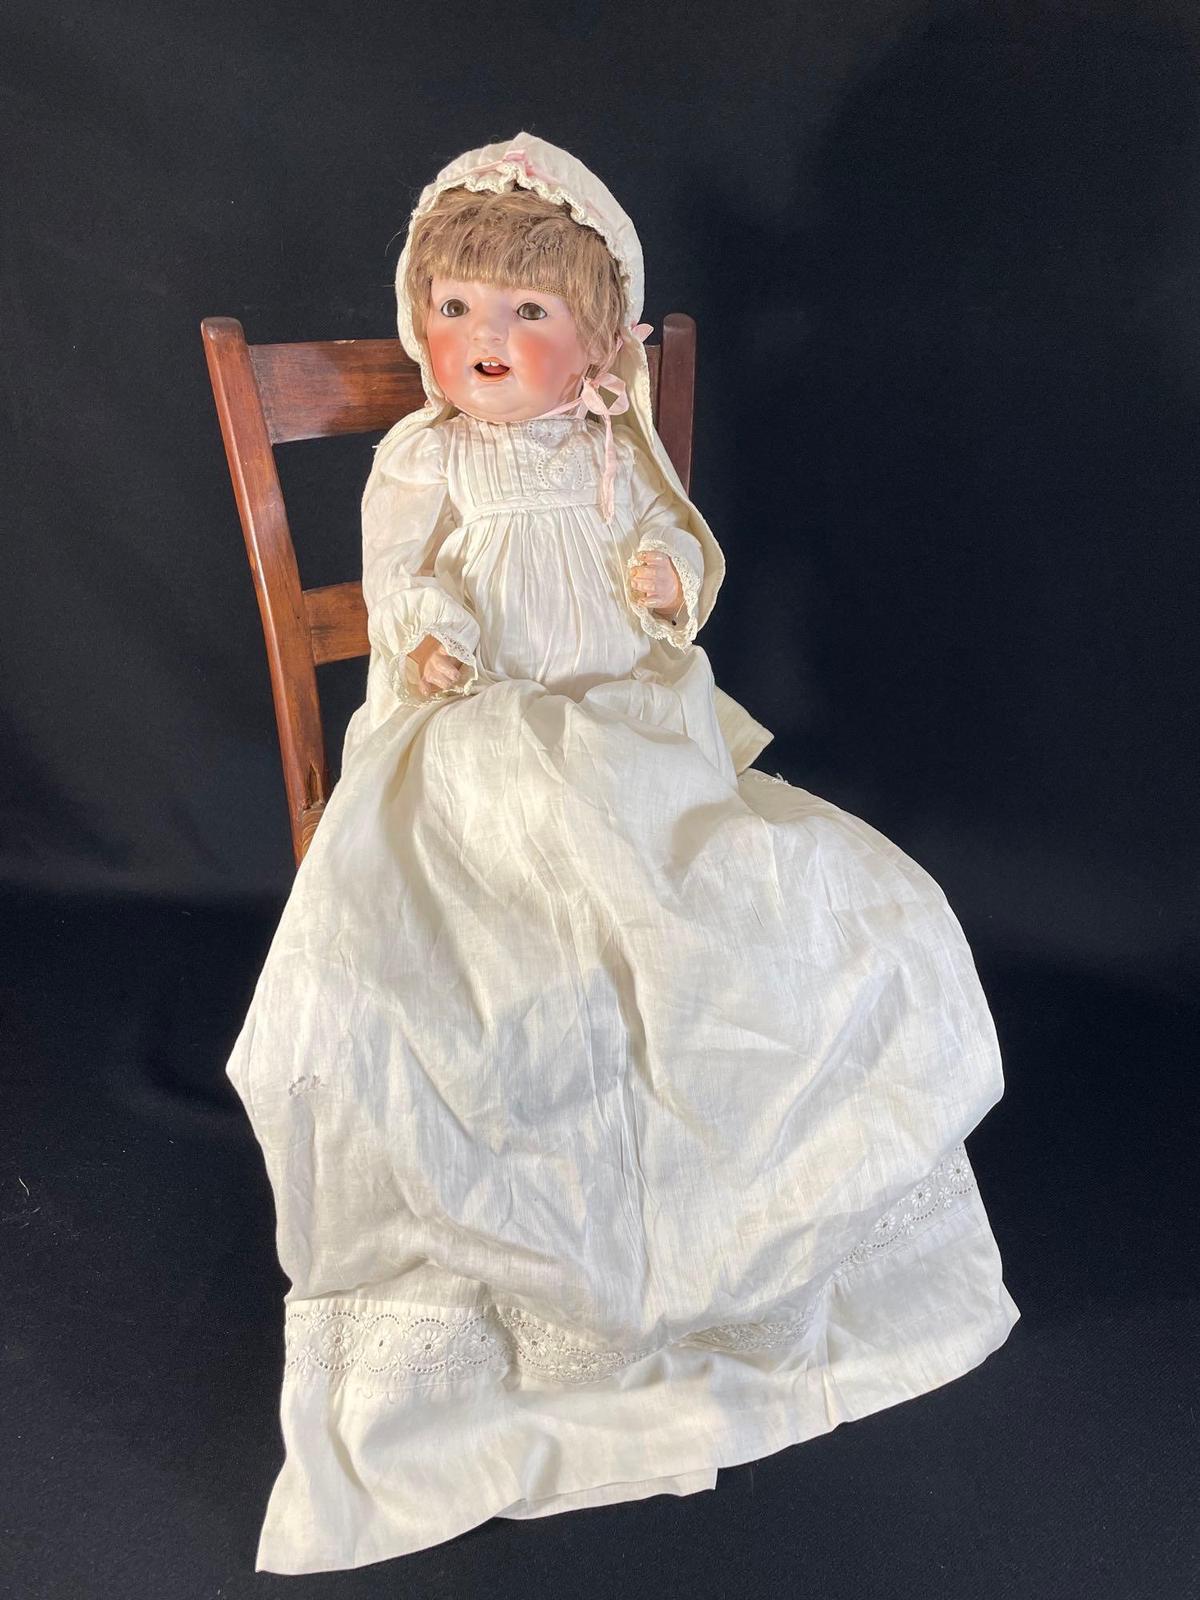 16" antique Kestner J.D.K Germany 226 bisque baby doll